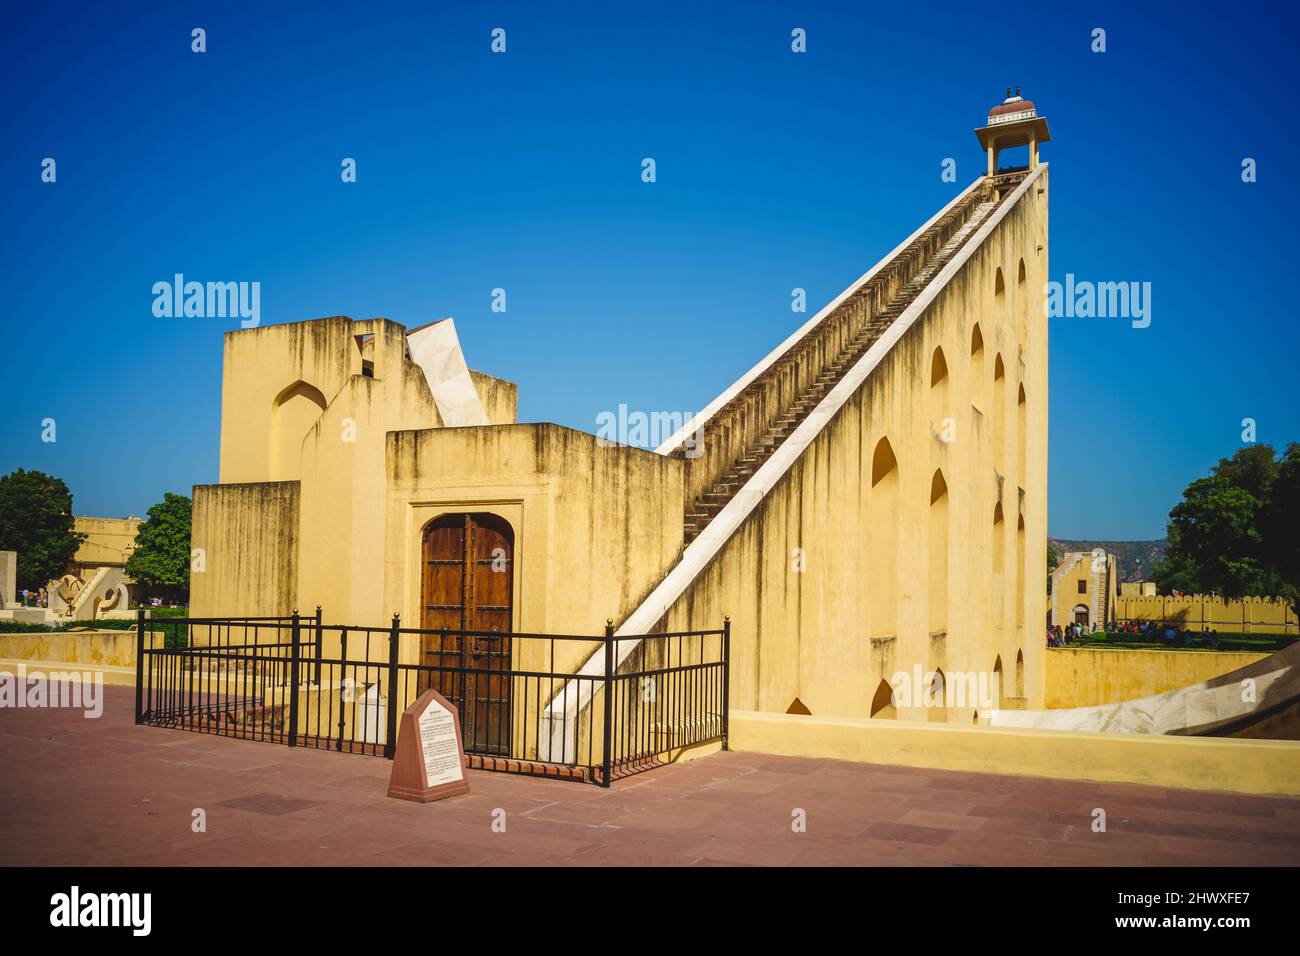 the sundial of Jantar Mantar at Jaipur in rajasthan, india Stock Photo